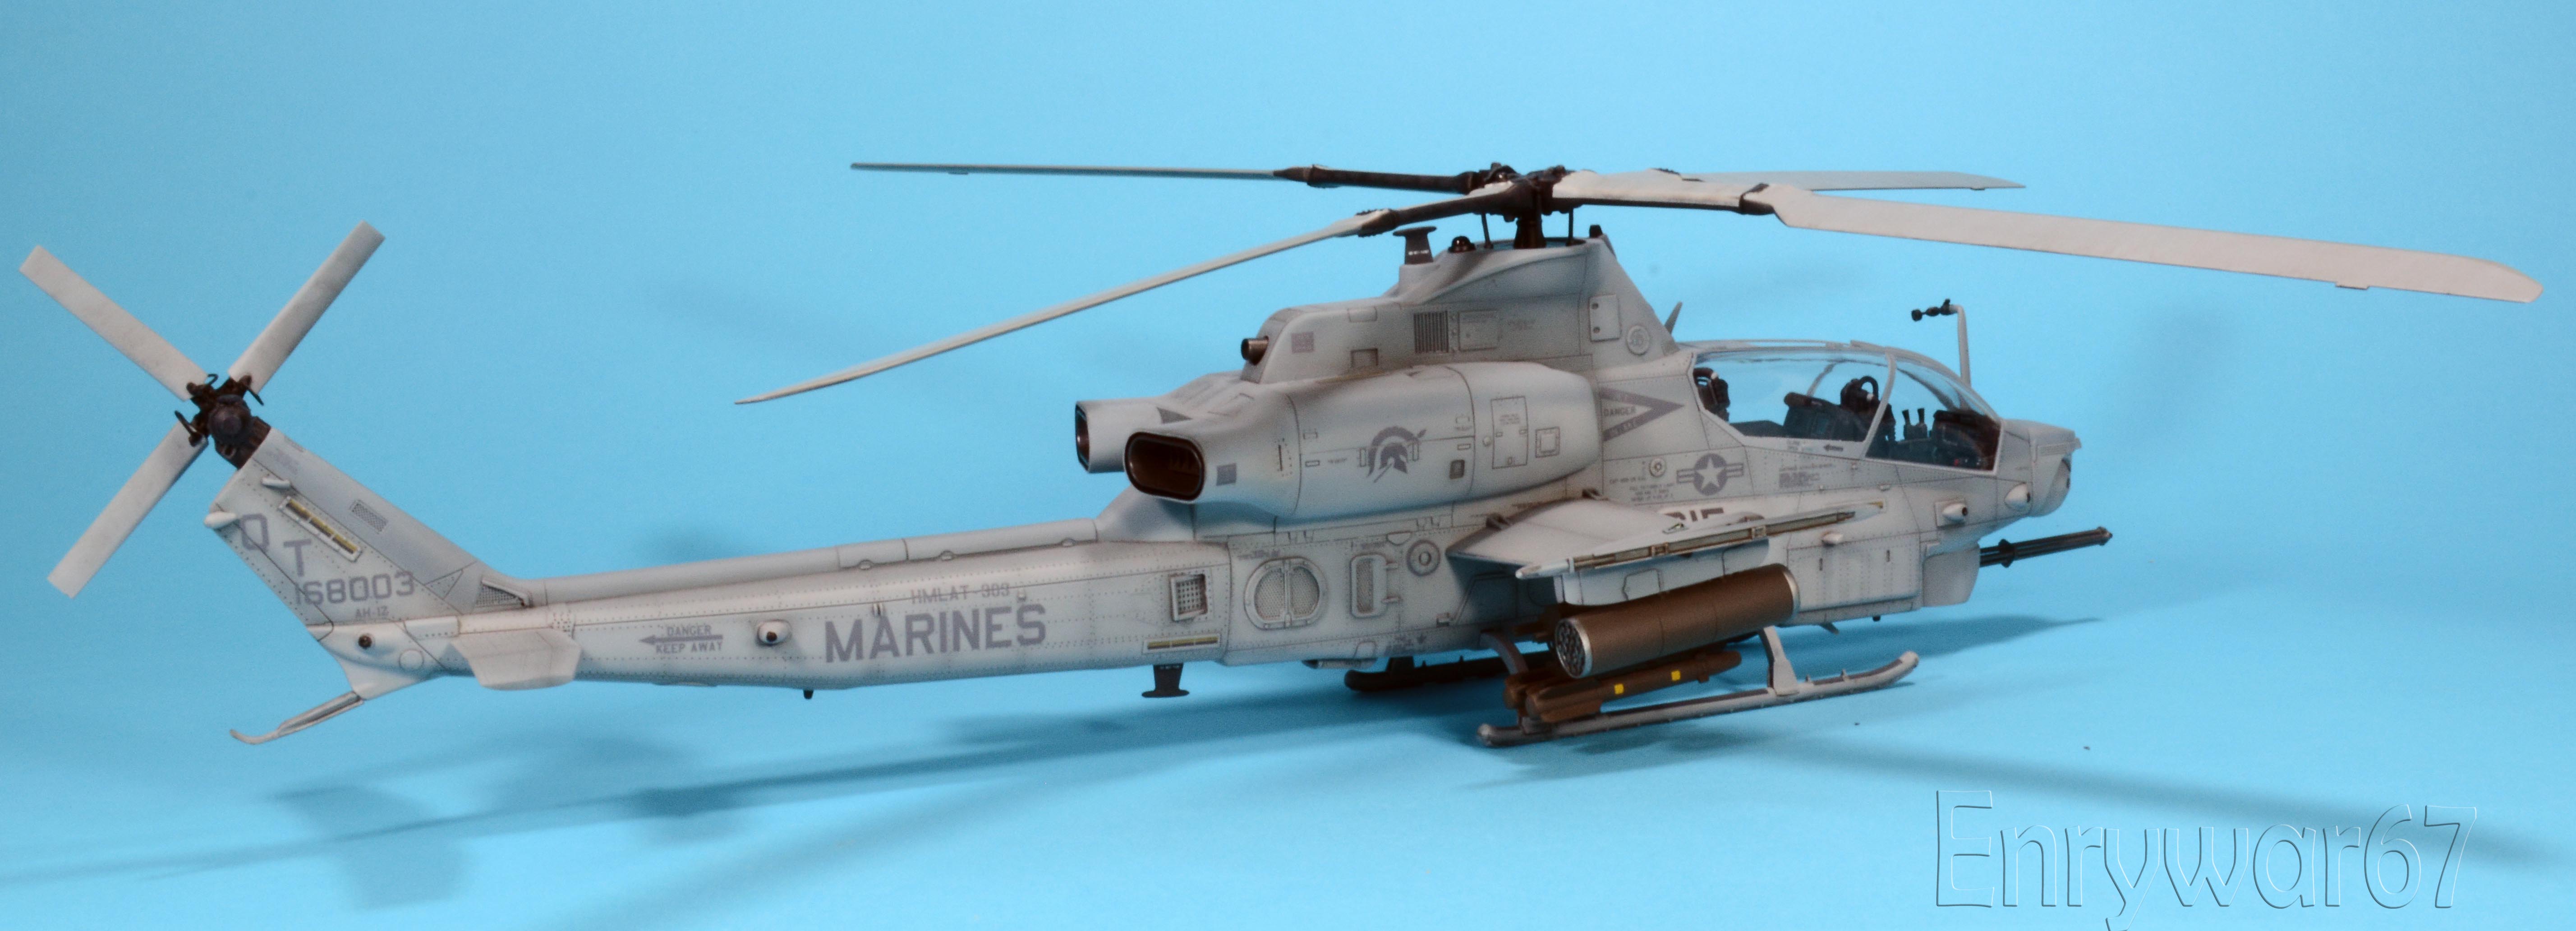 AH-1Z (4).jpg  by Enrywar67